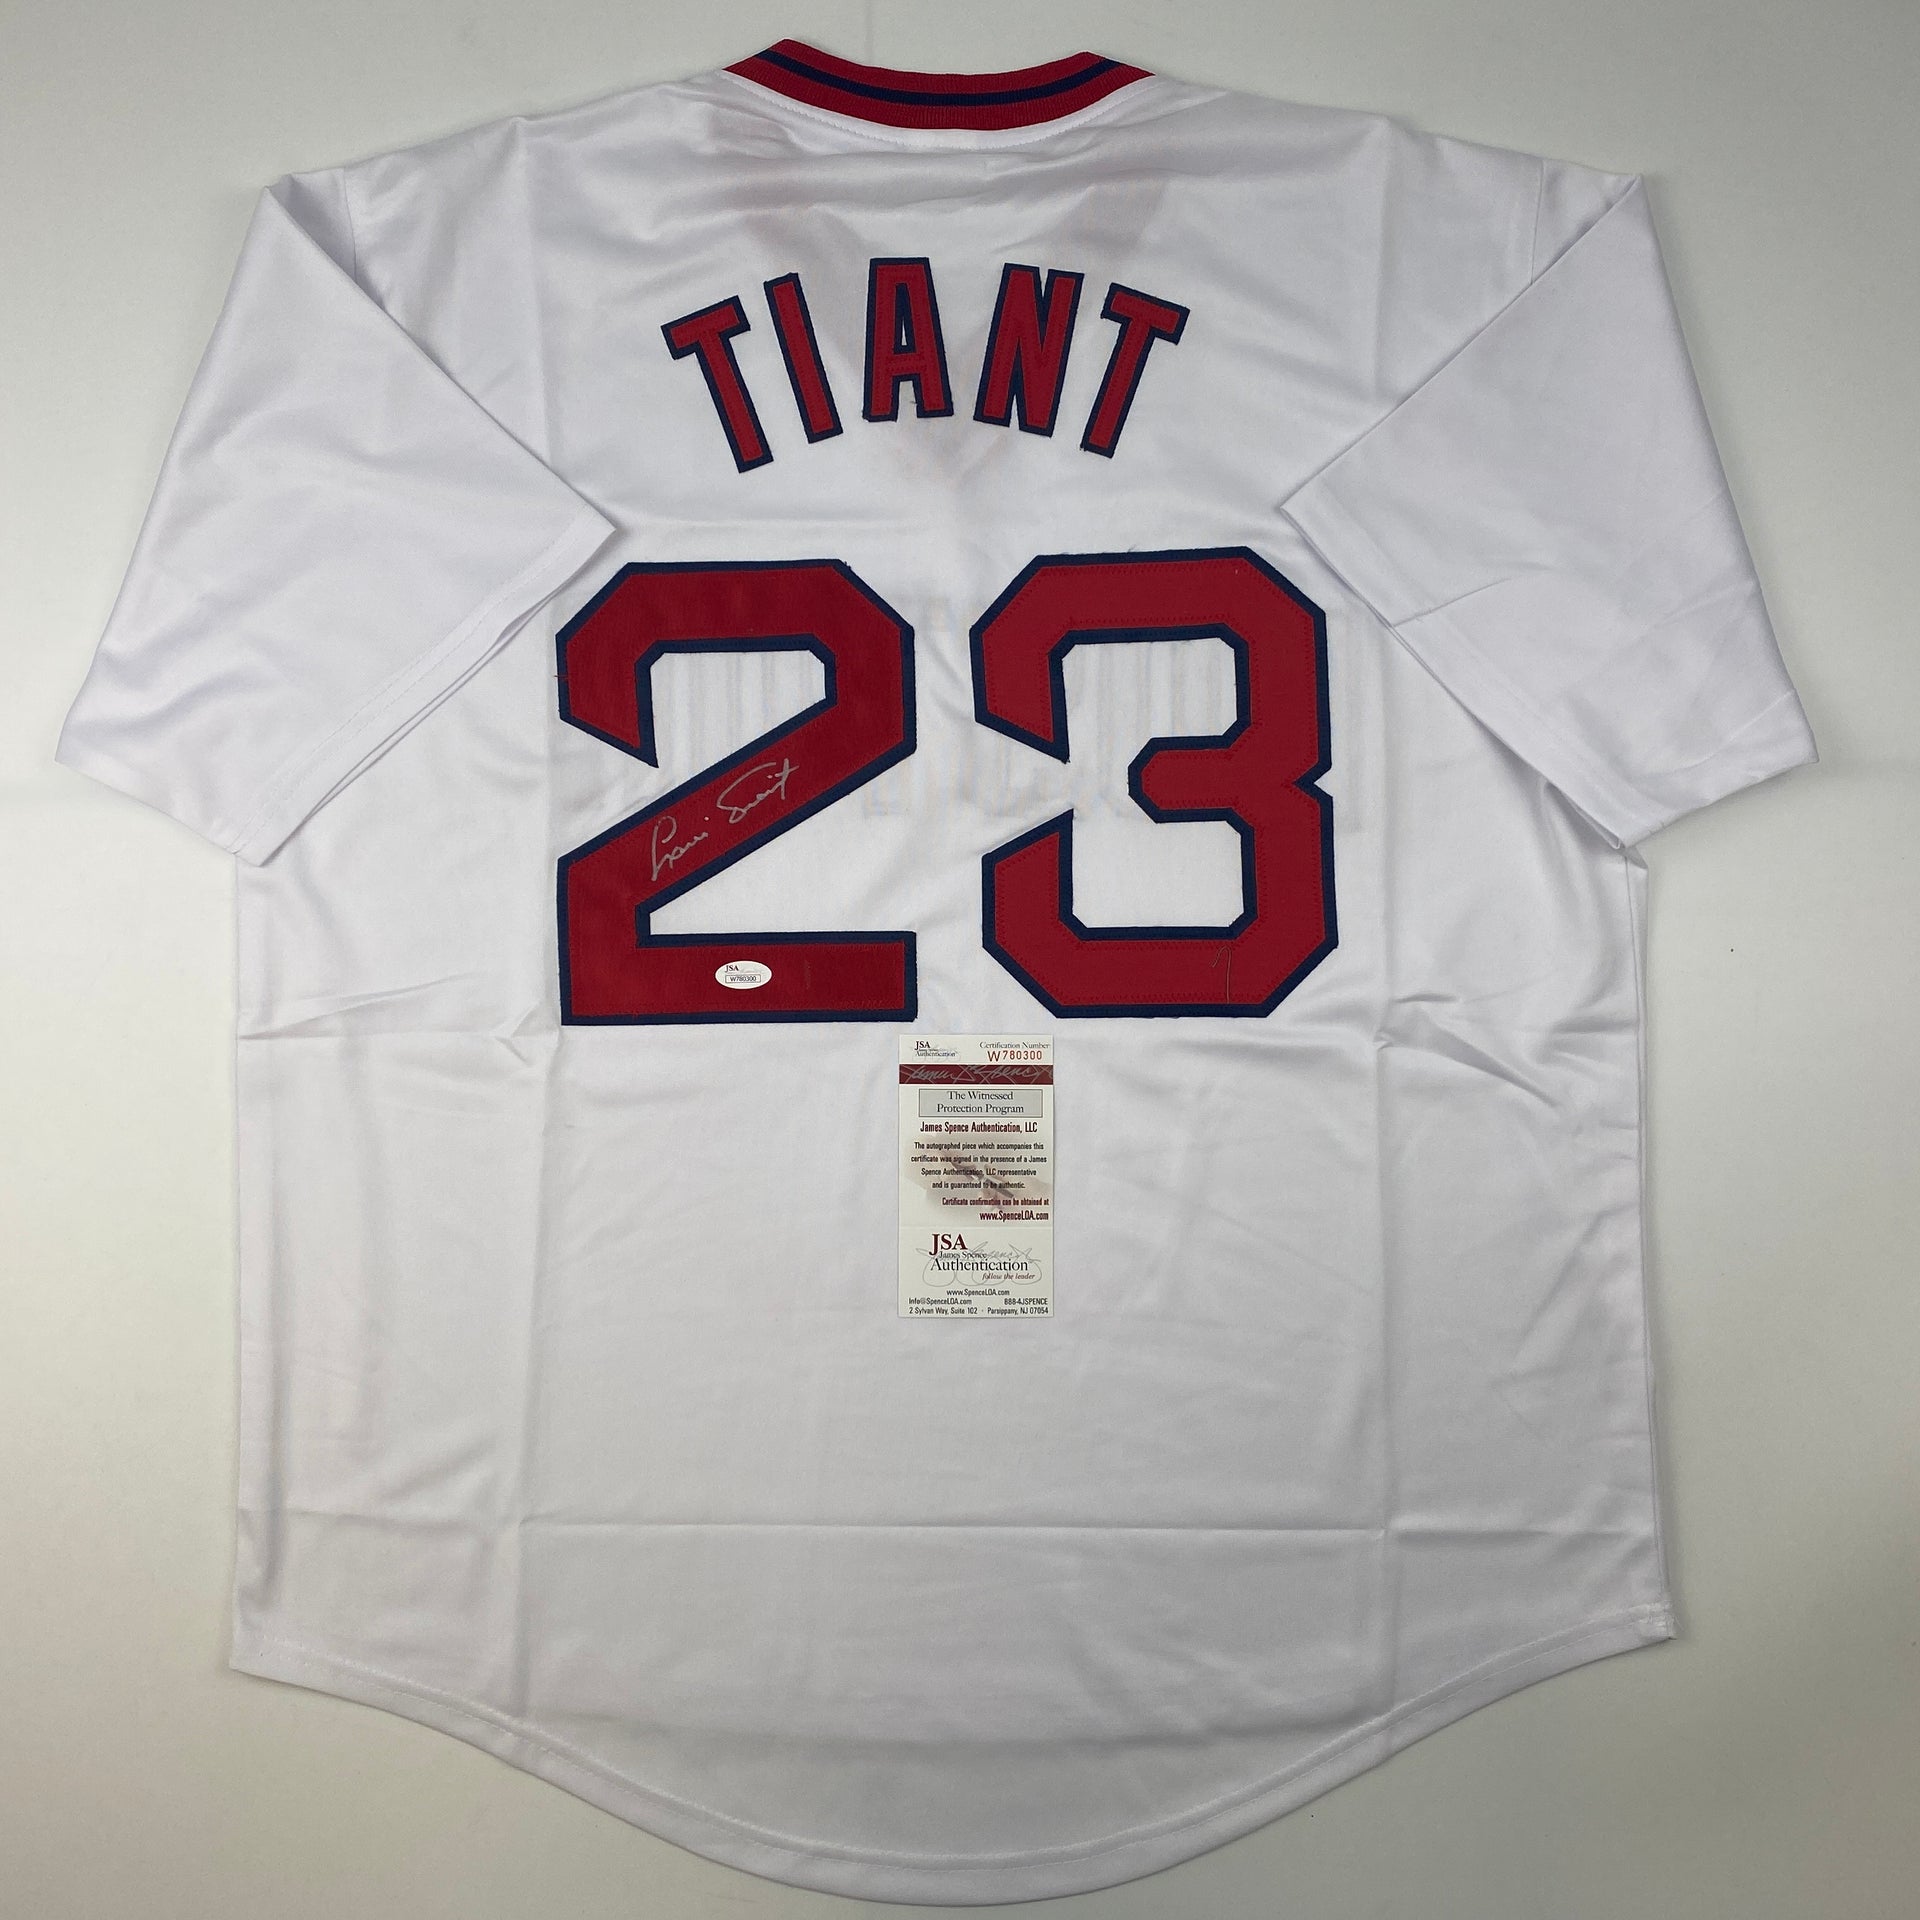 Boston Red Sox - Authentic Sports Memorabilia